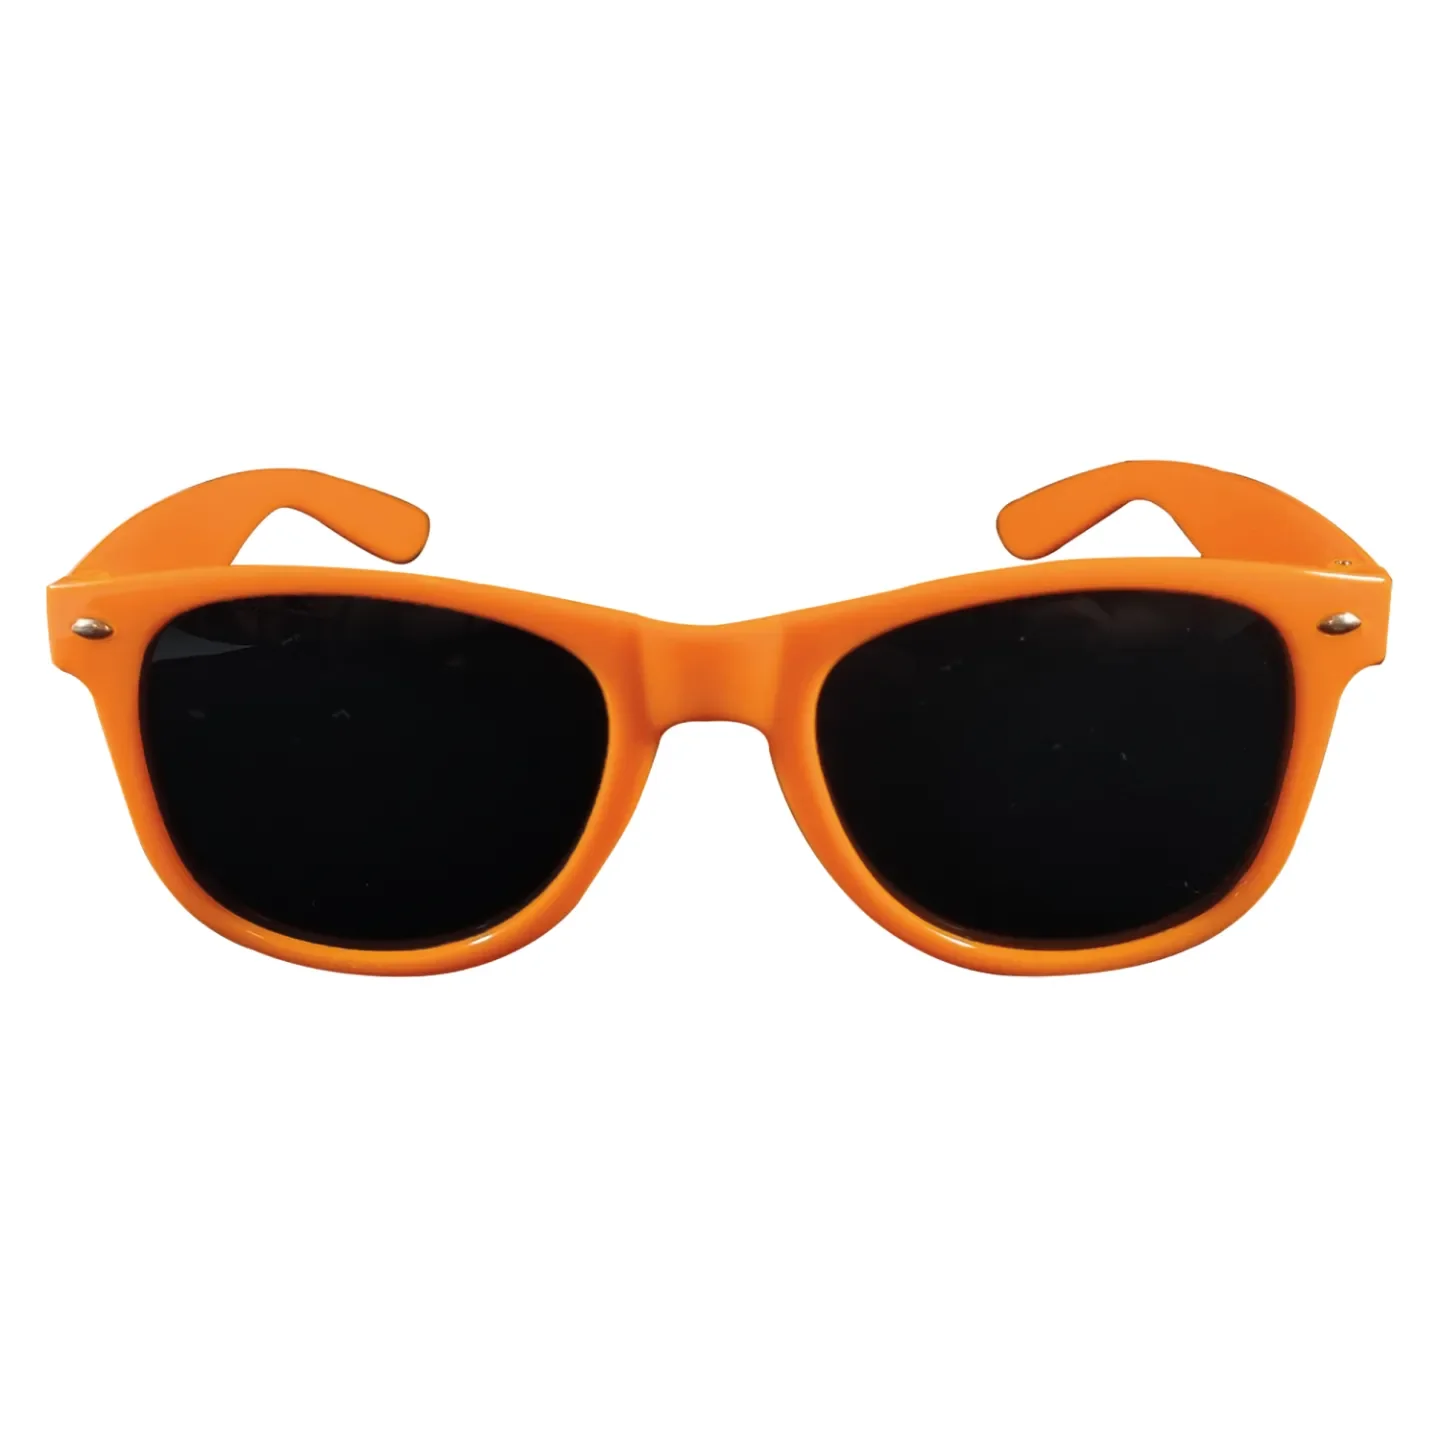 Koningsdag zonnebril - Oranje kopen.